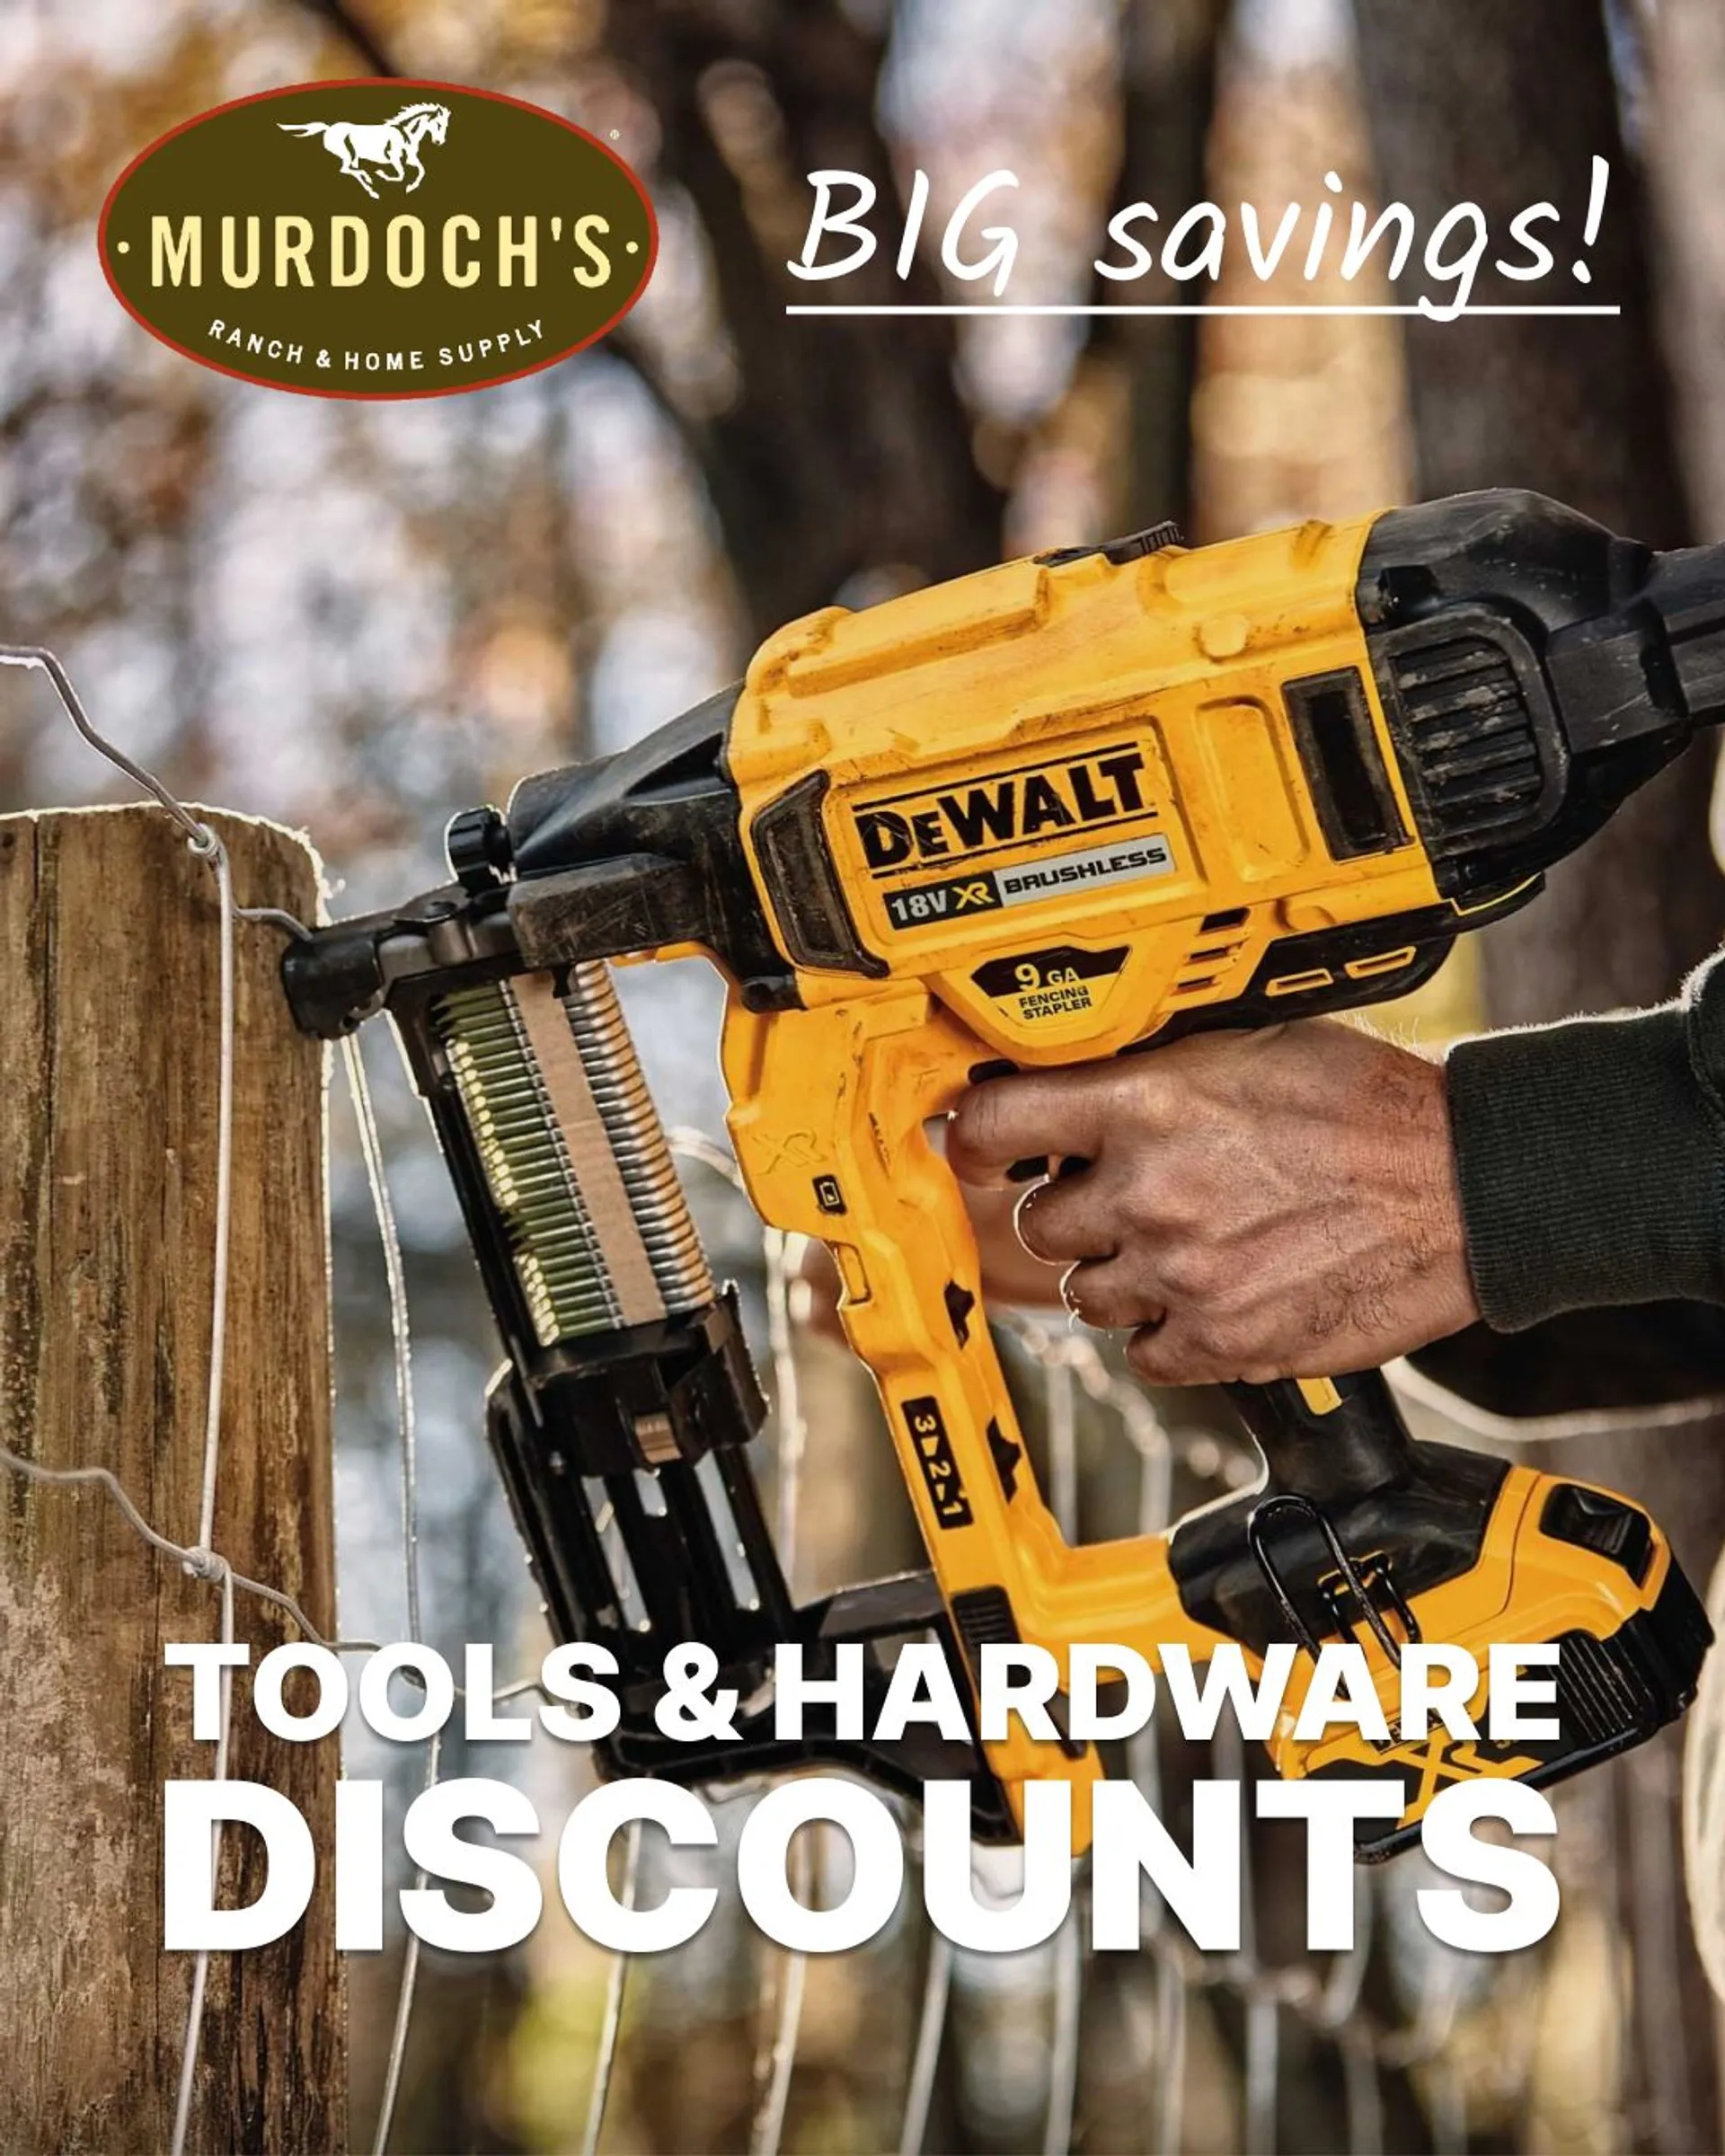 Murdoch's - Tools & Hardware deals